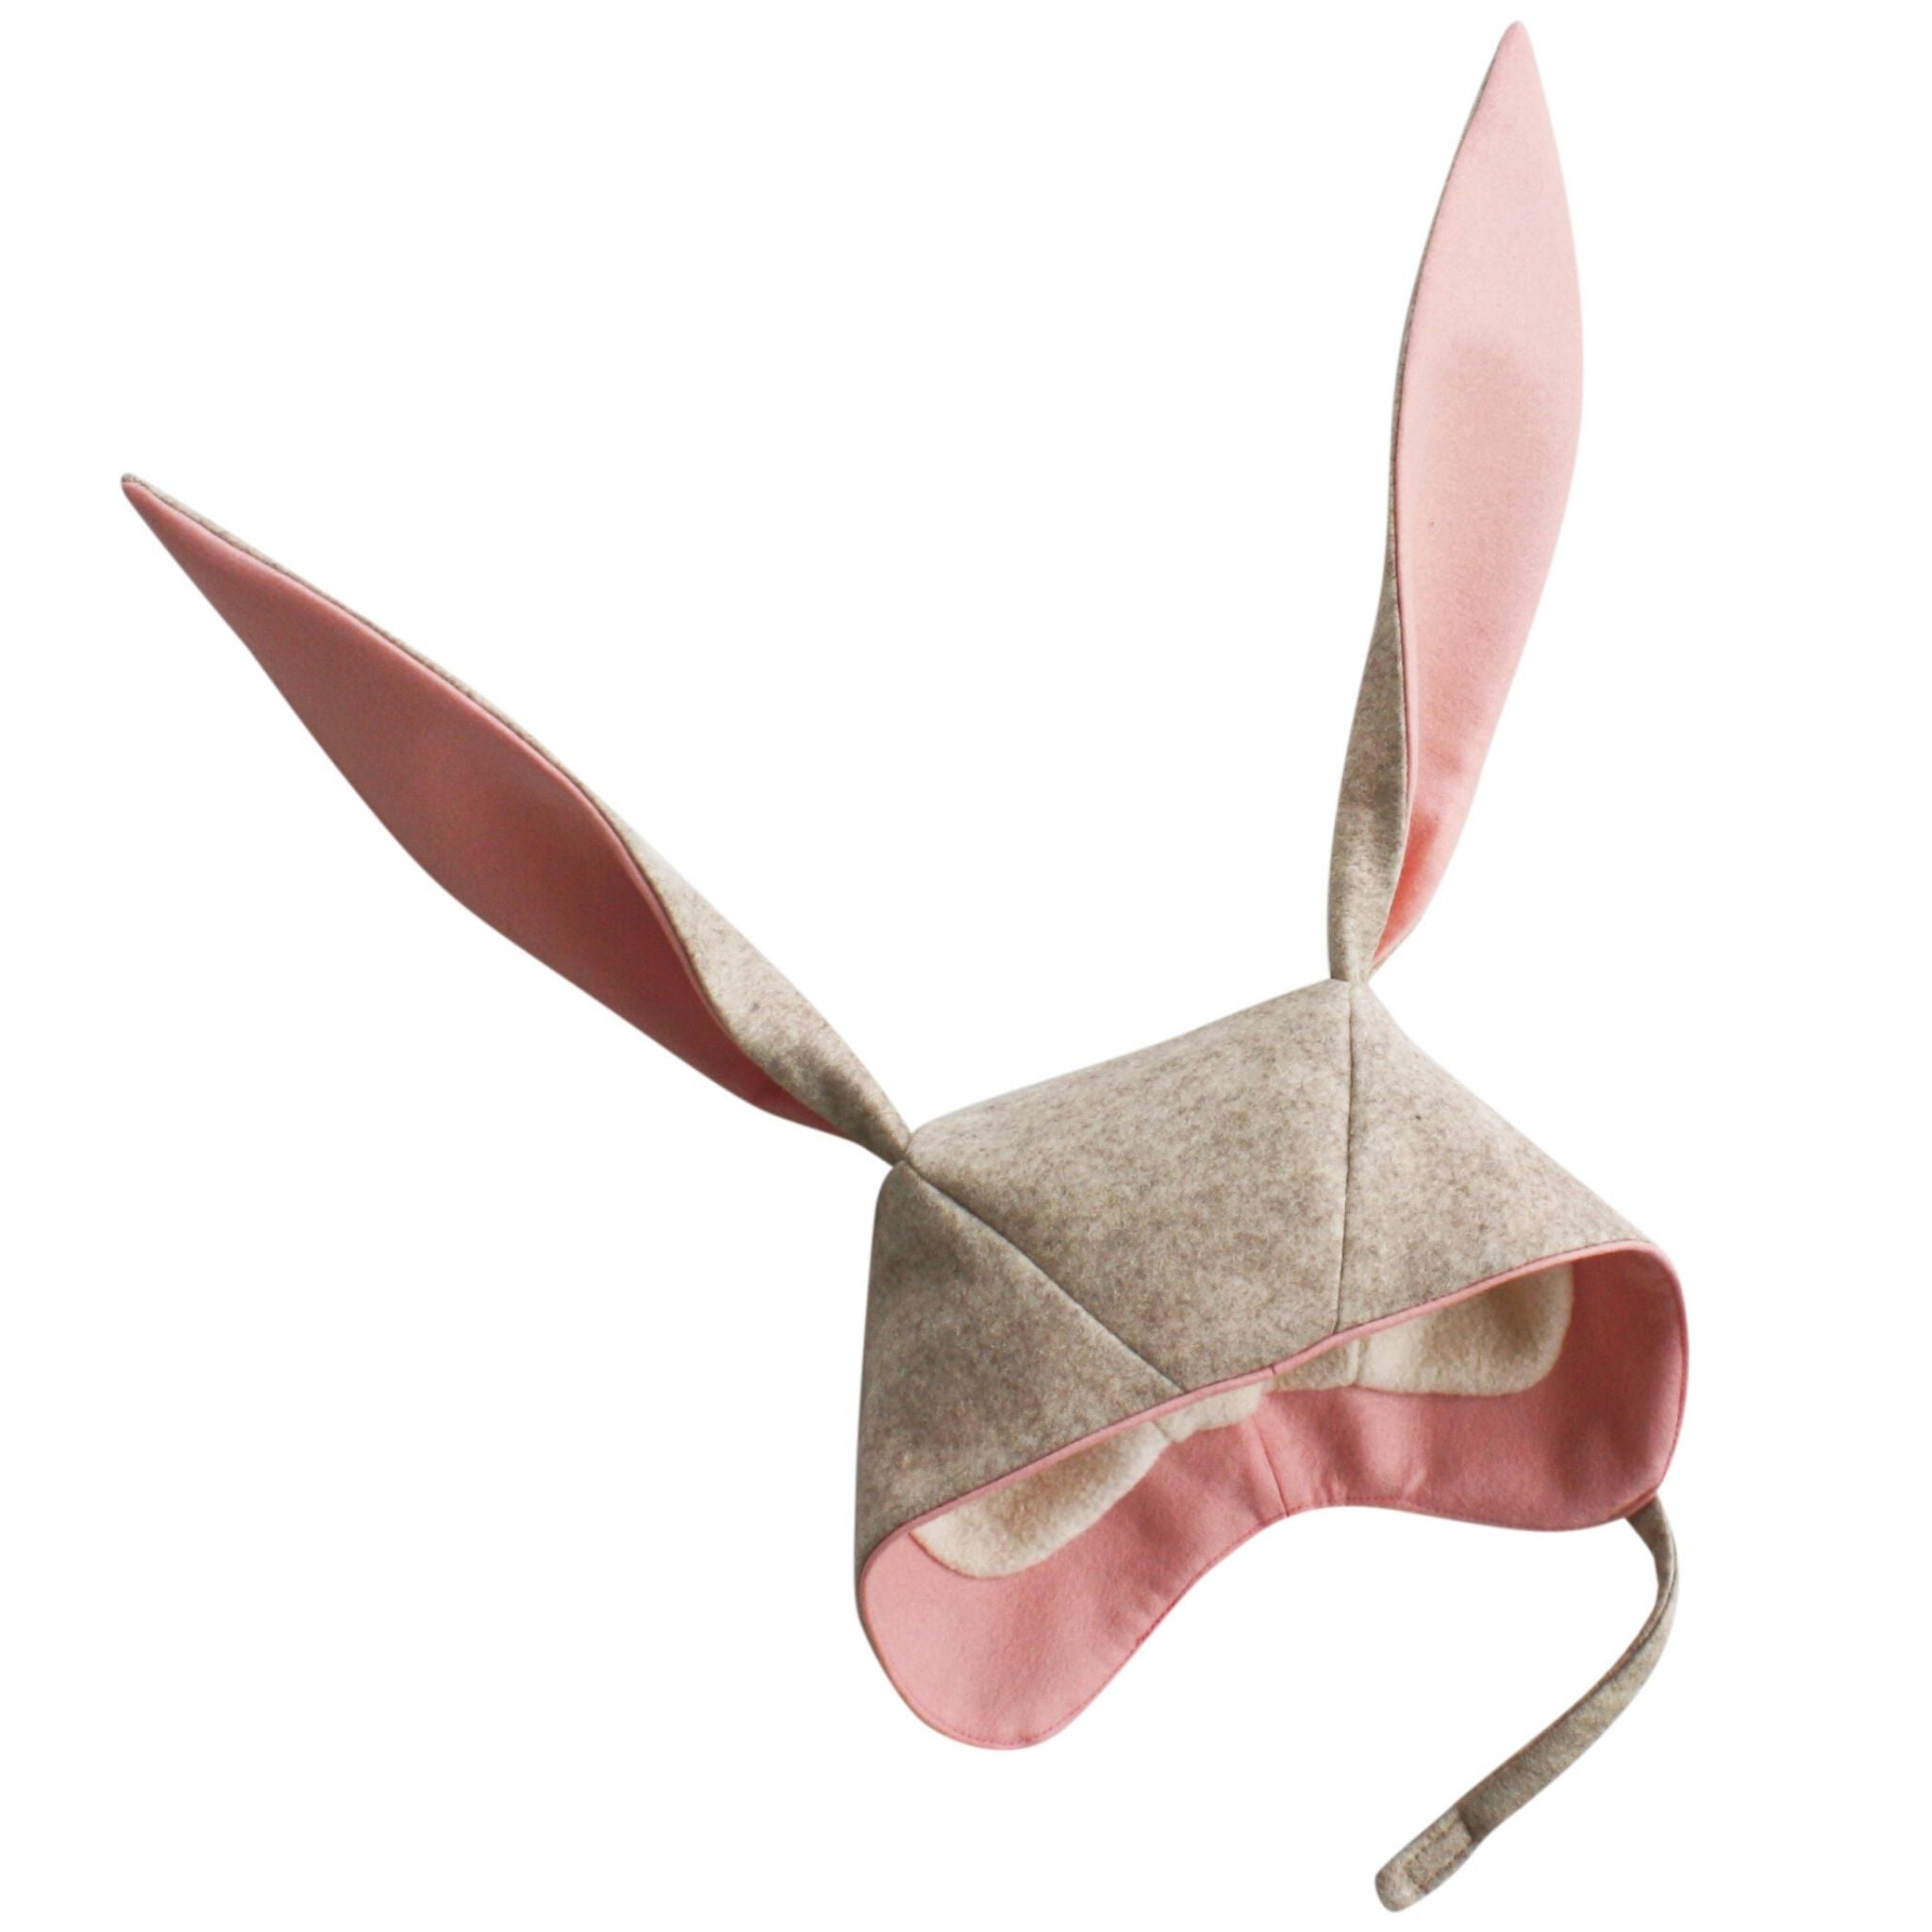 Easter Caribbean Blue Bunny Ears Headband